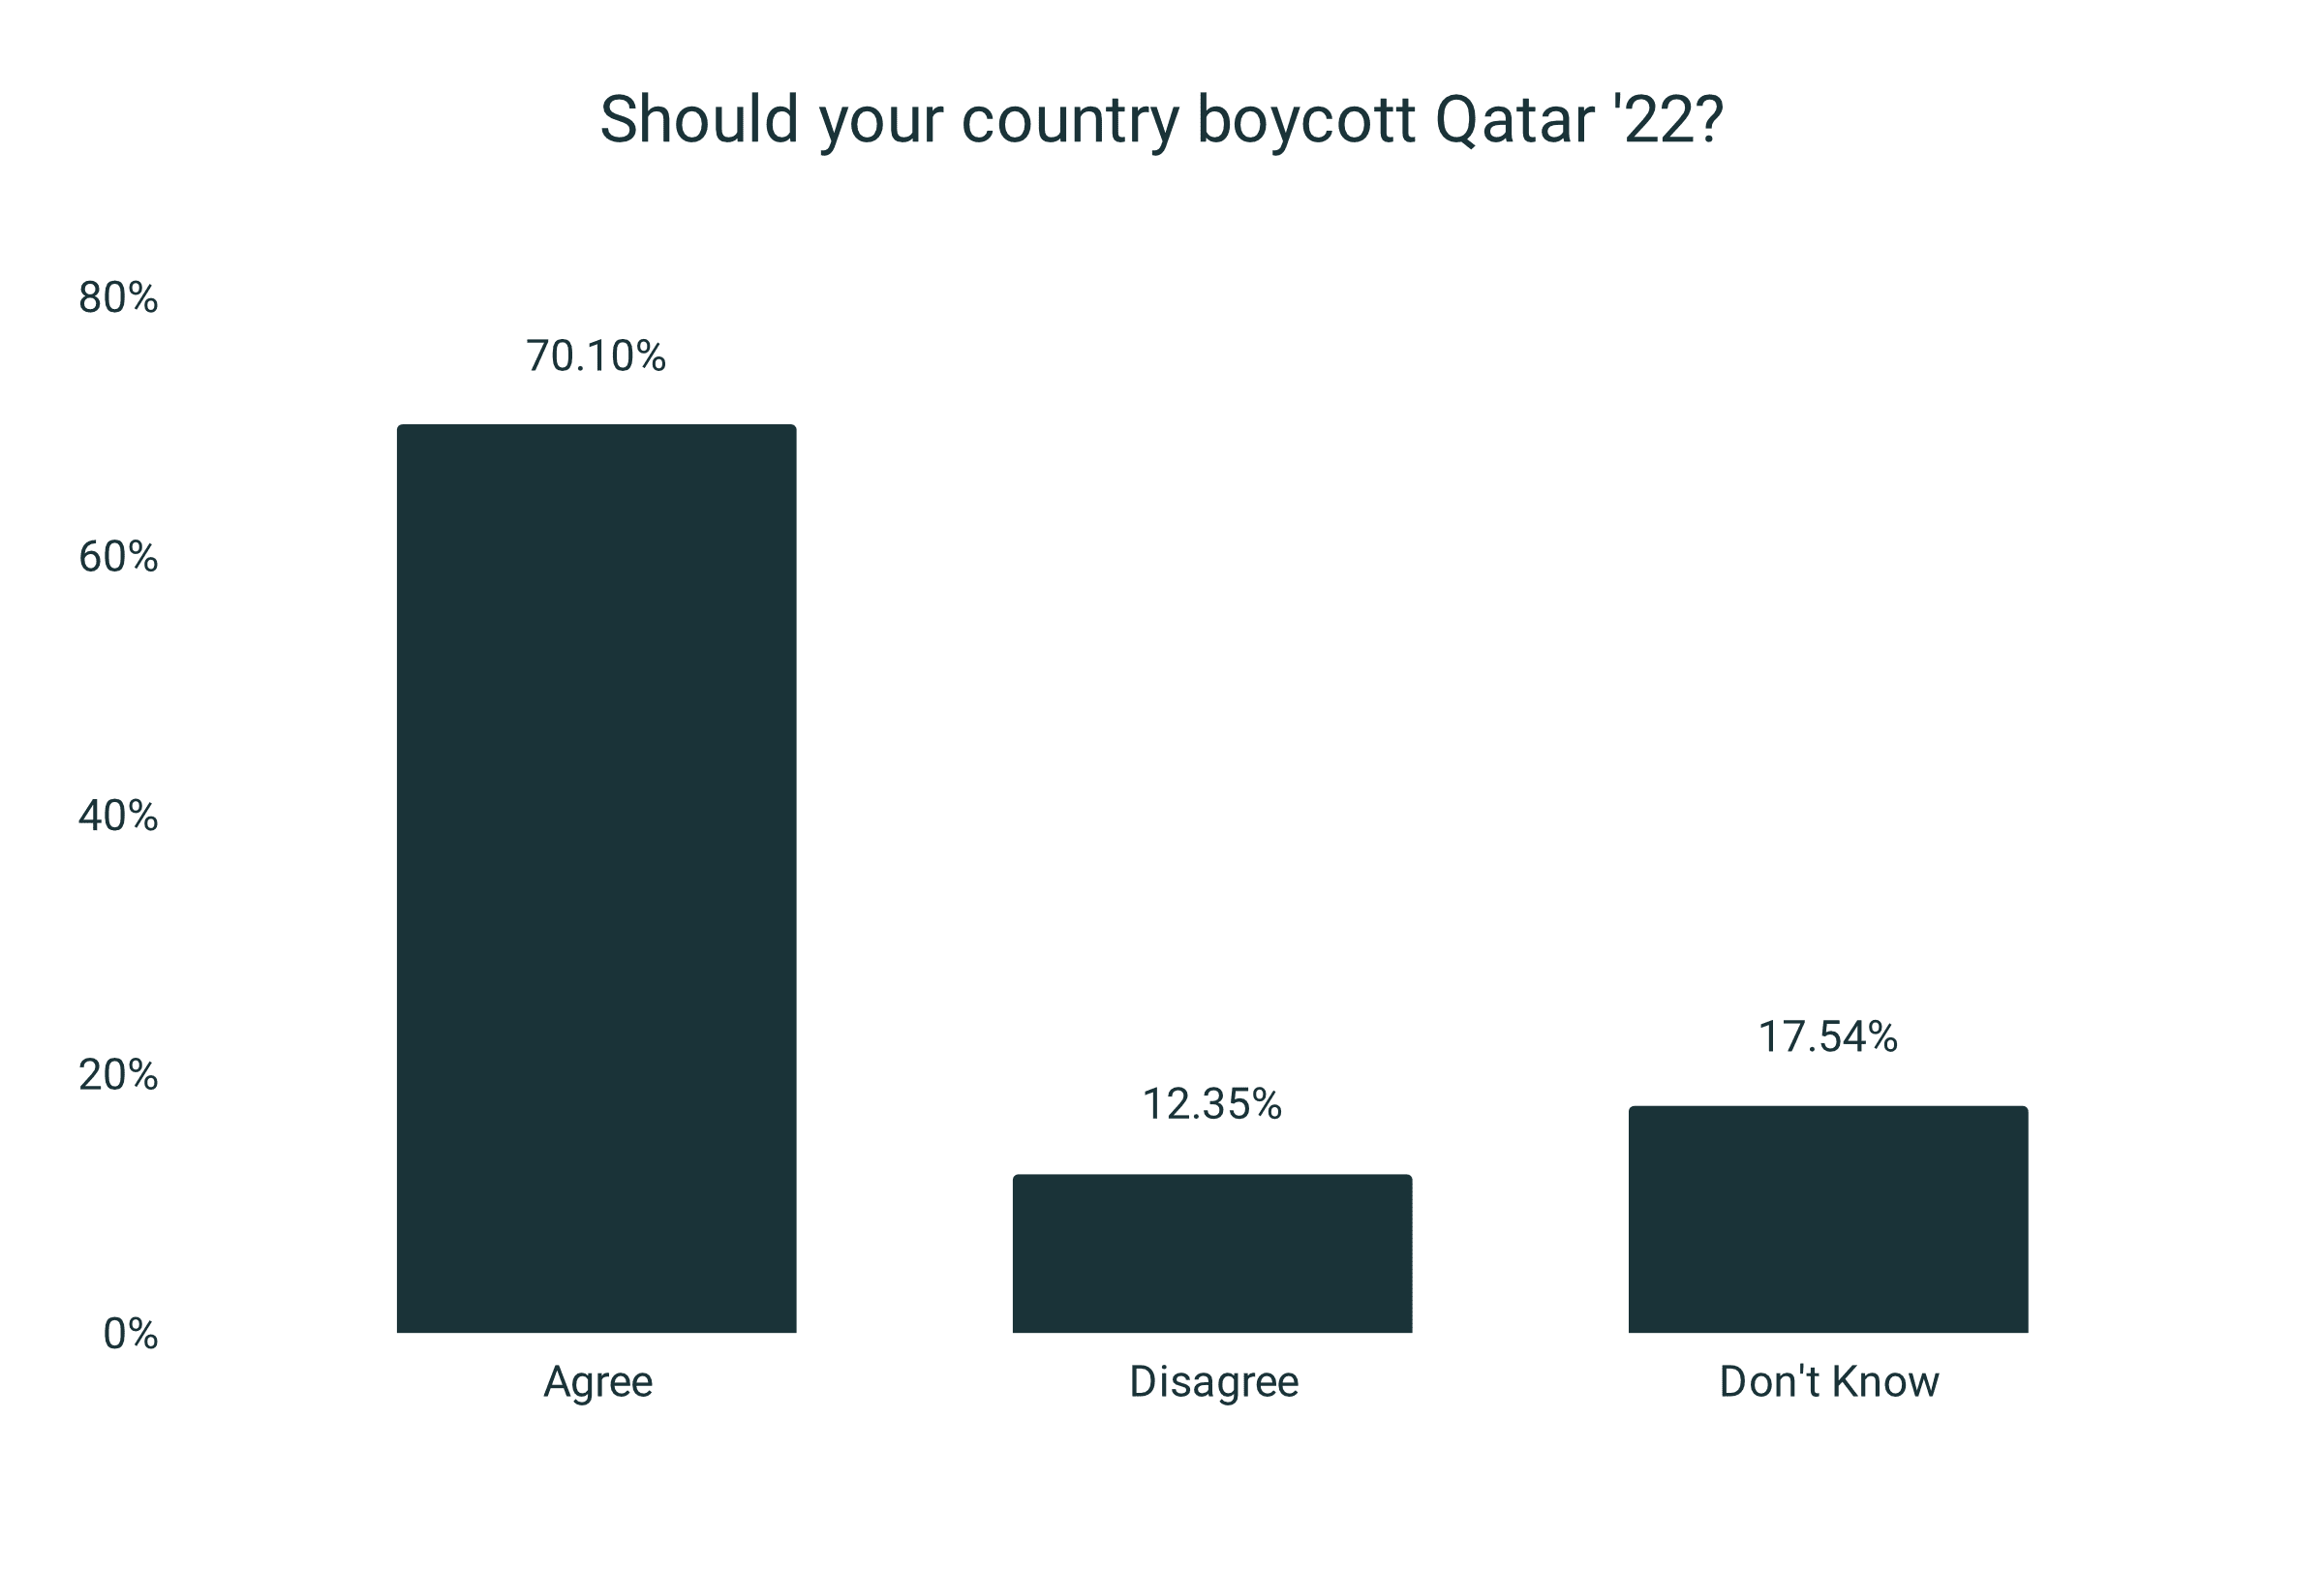 El 70% cree que su país debería boicotear el Mundial de Qatar (4.201 personas encuestadas)